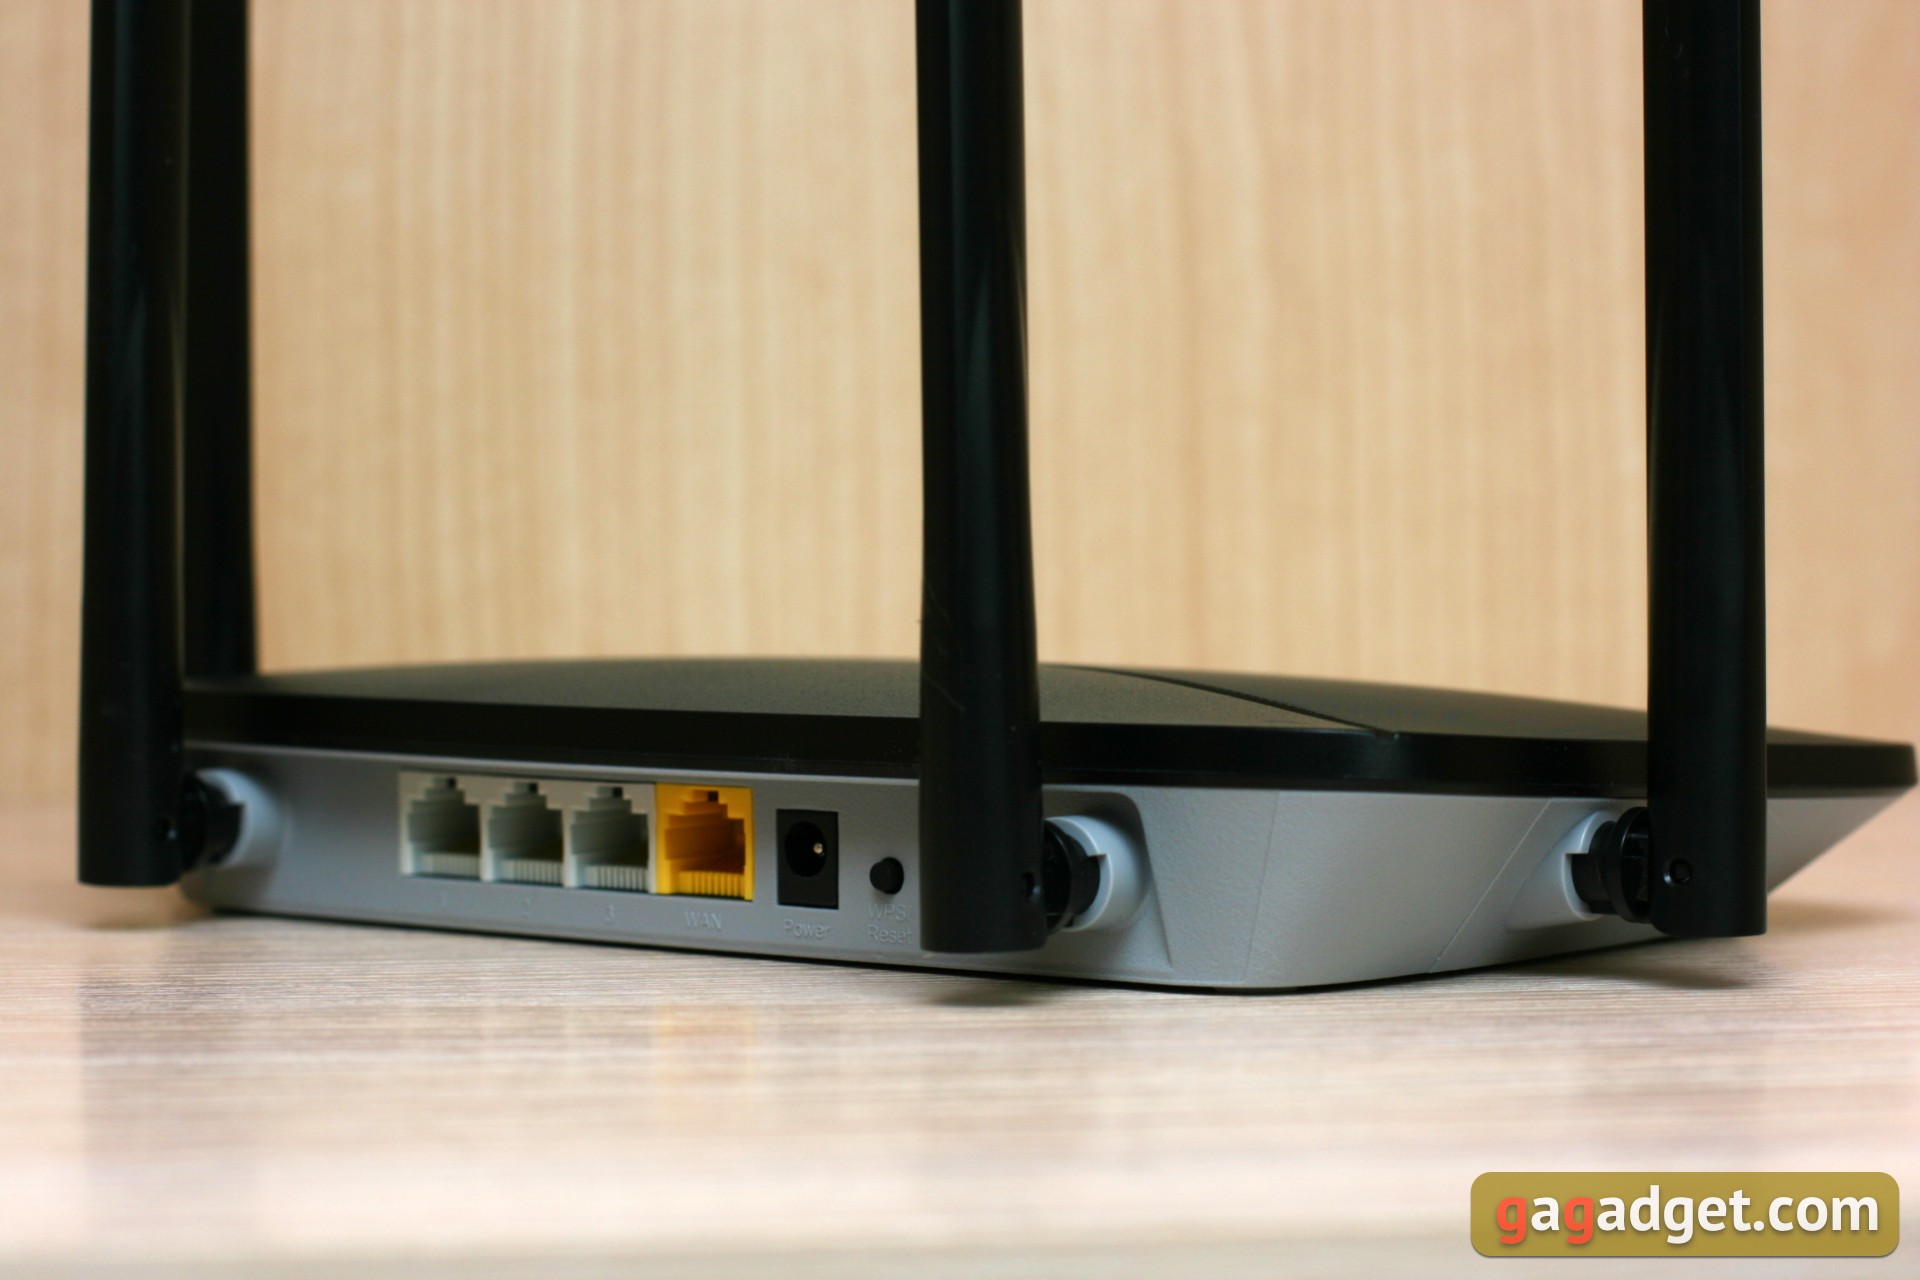 Przegląd Wi-Fi Routera Mercusys AC12G: dostępny gigabit-9